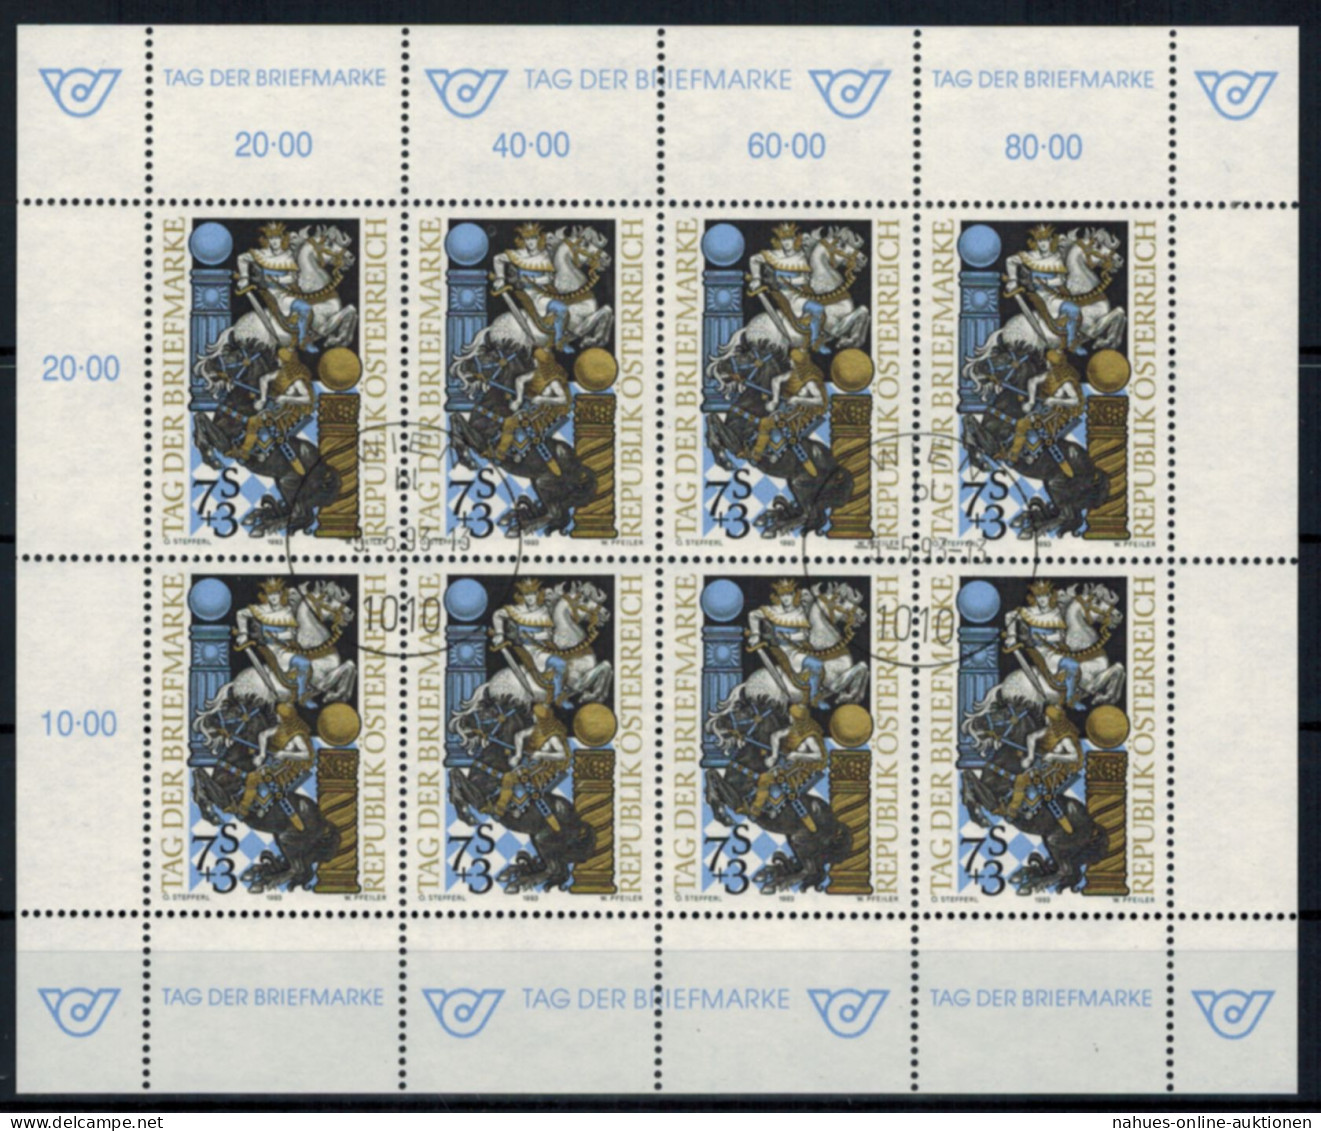 Österreich Kleinbogen Tag Der Briefmarke 2097 Philatelie Ersttagsstempel 1993 - Covers & Documents